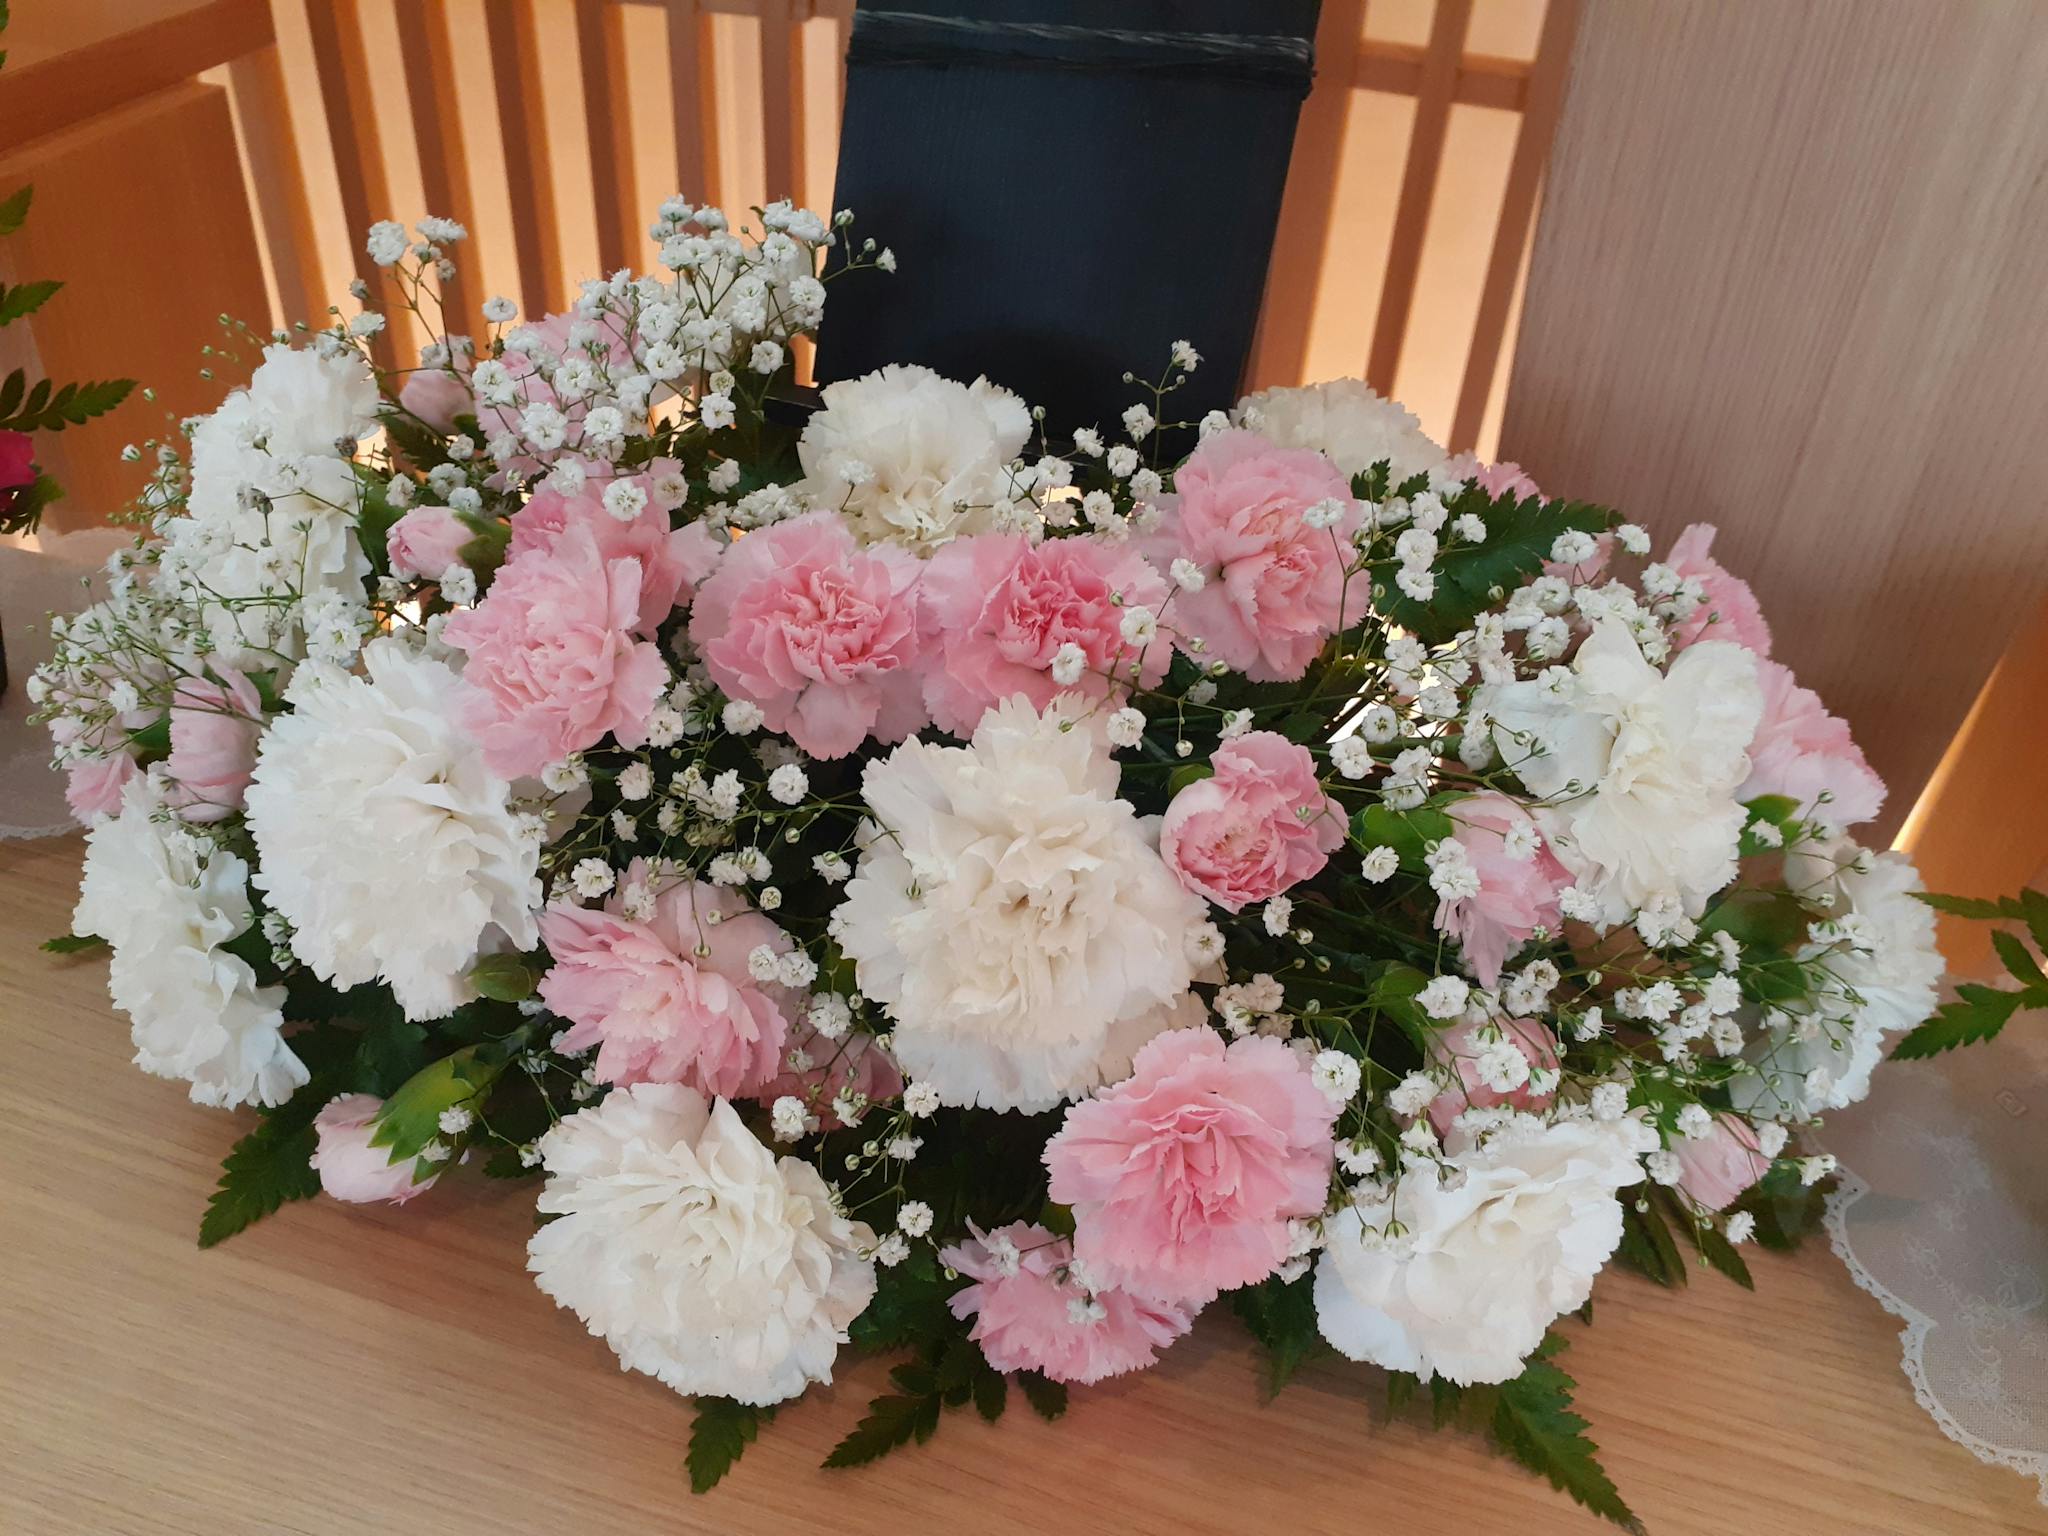 お葬式のお花「供花」。供花の概要や東京での相場を解説します。